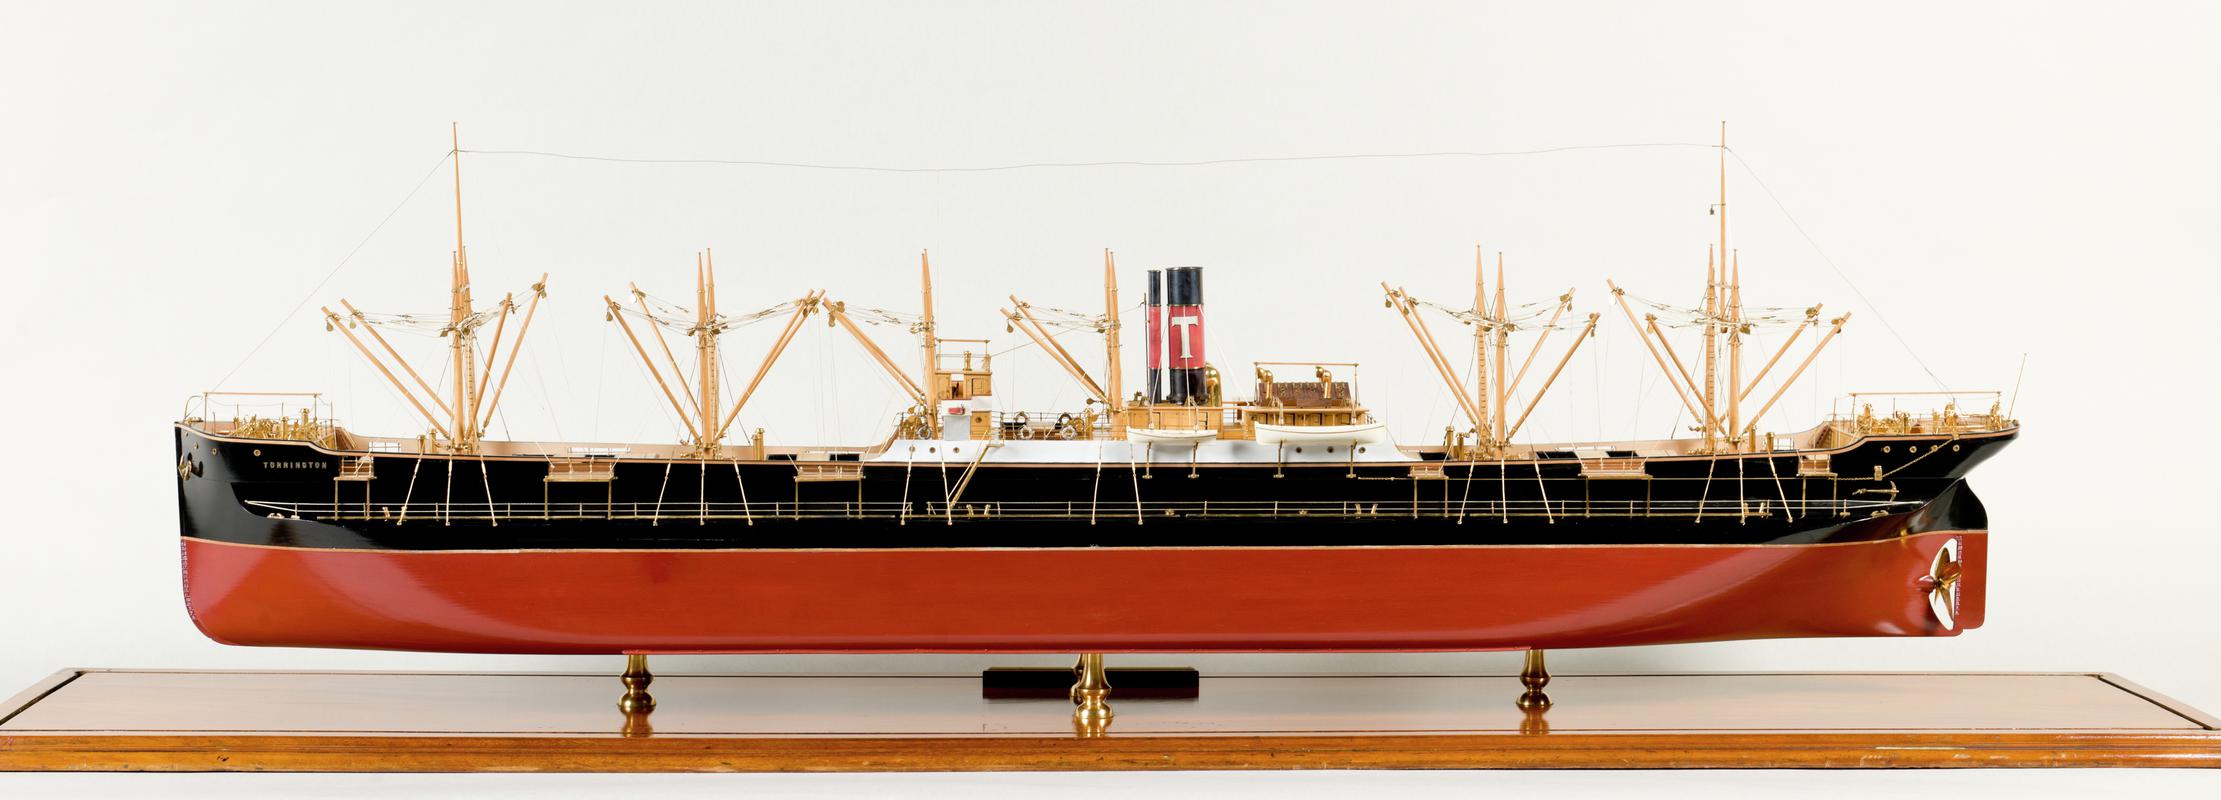 Full hull ship model of the S.S. TORRINGTON